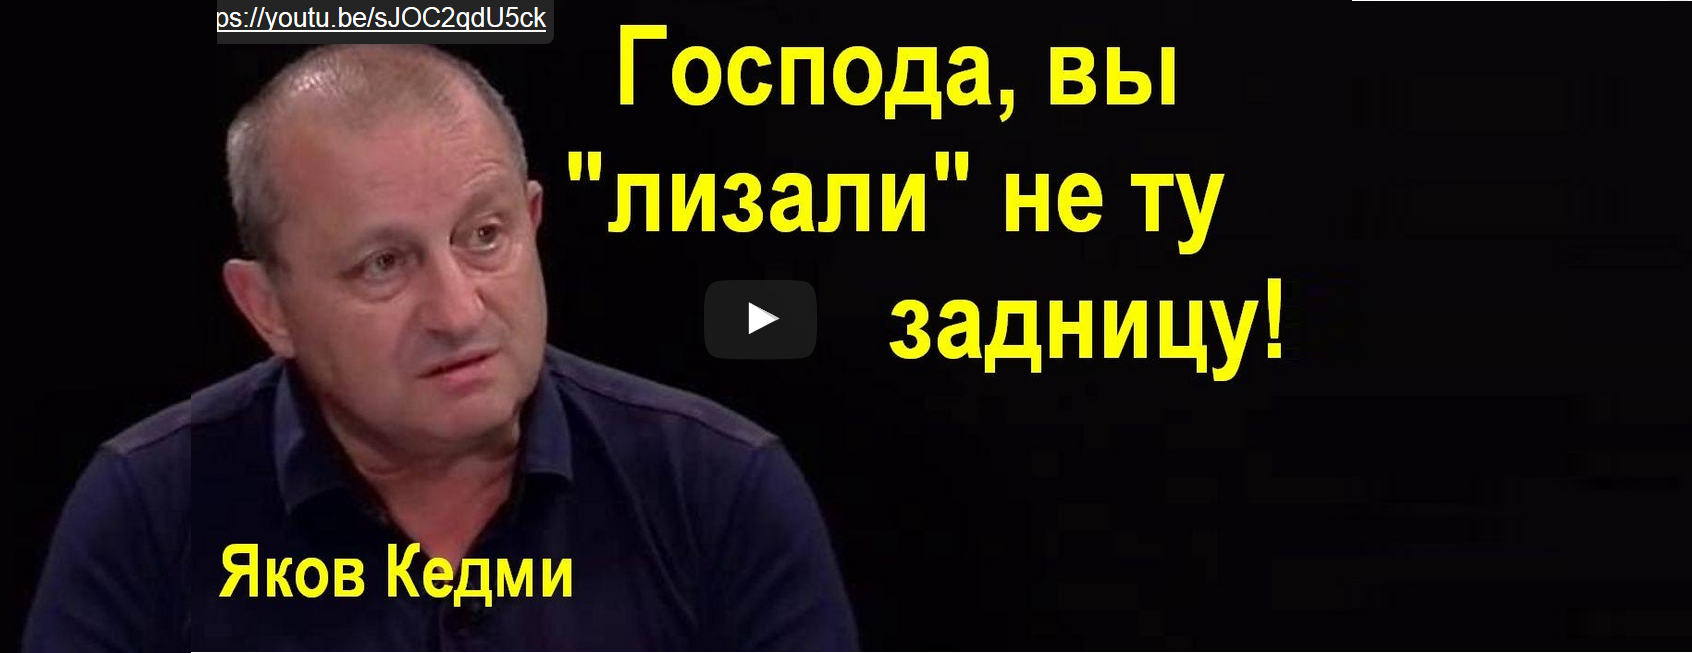 Читать высказывания Якова Кедми о рекламе в программе Сатановского